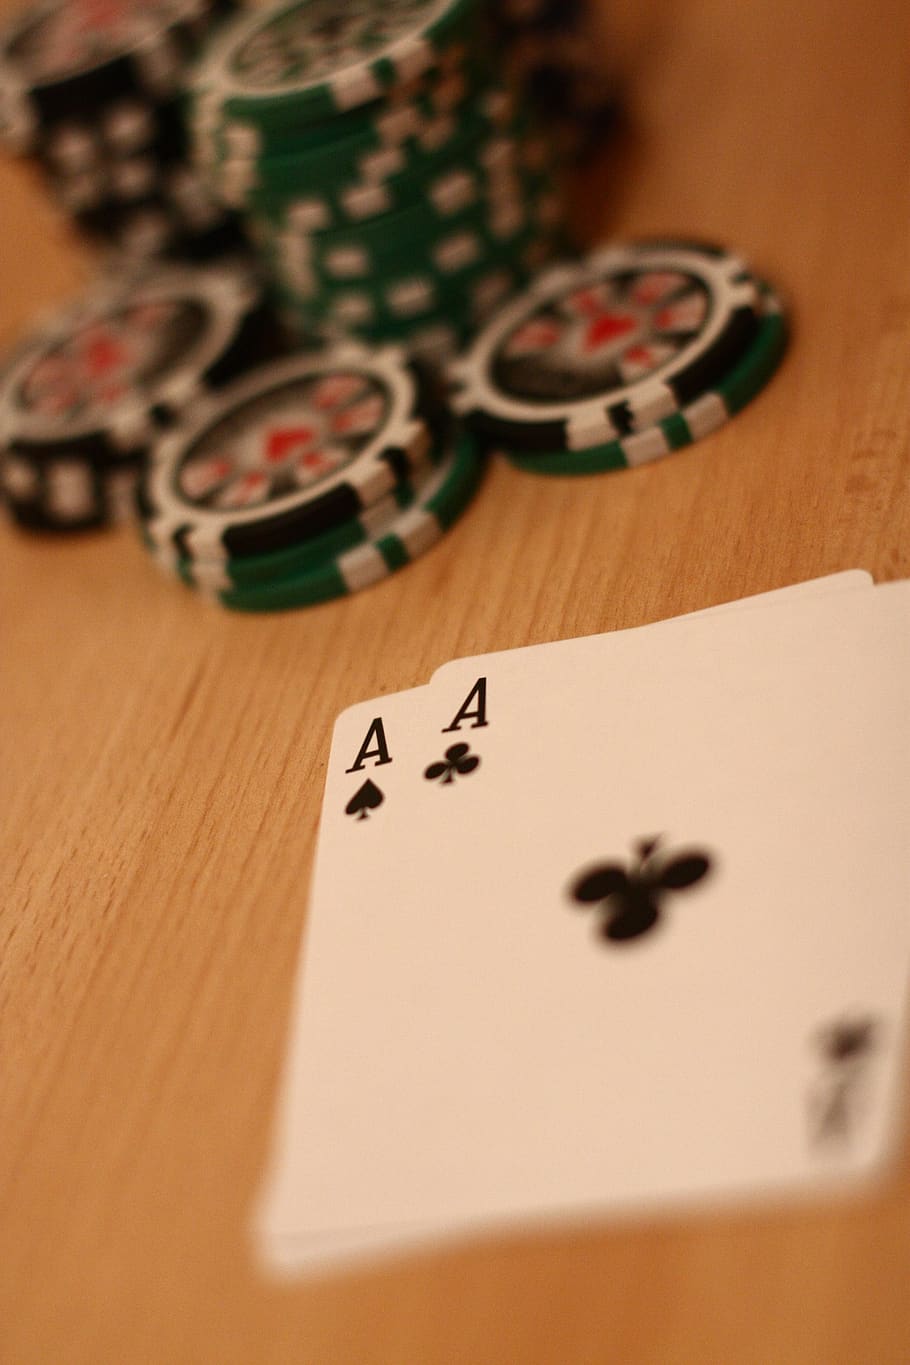 Gambling at casinos post thumbnail image